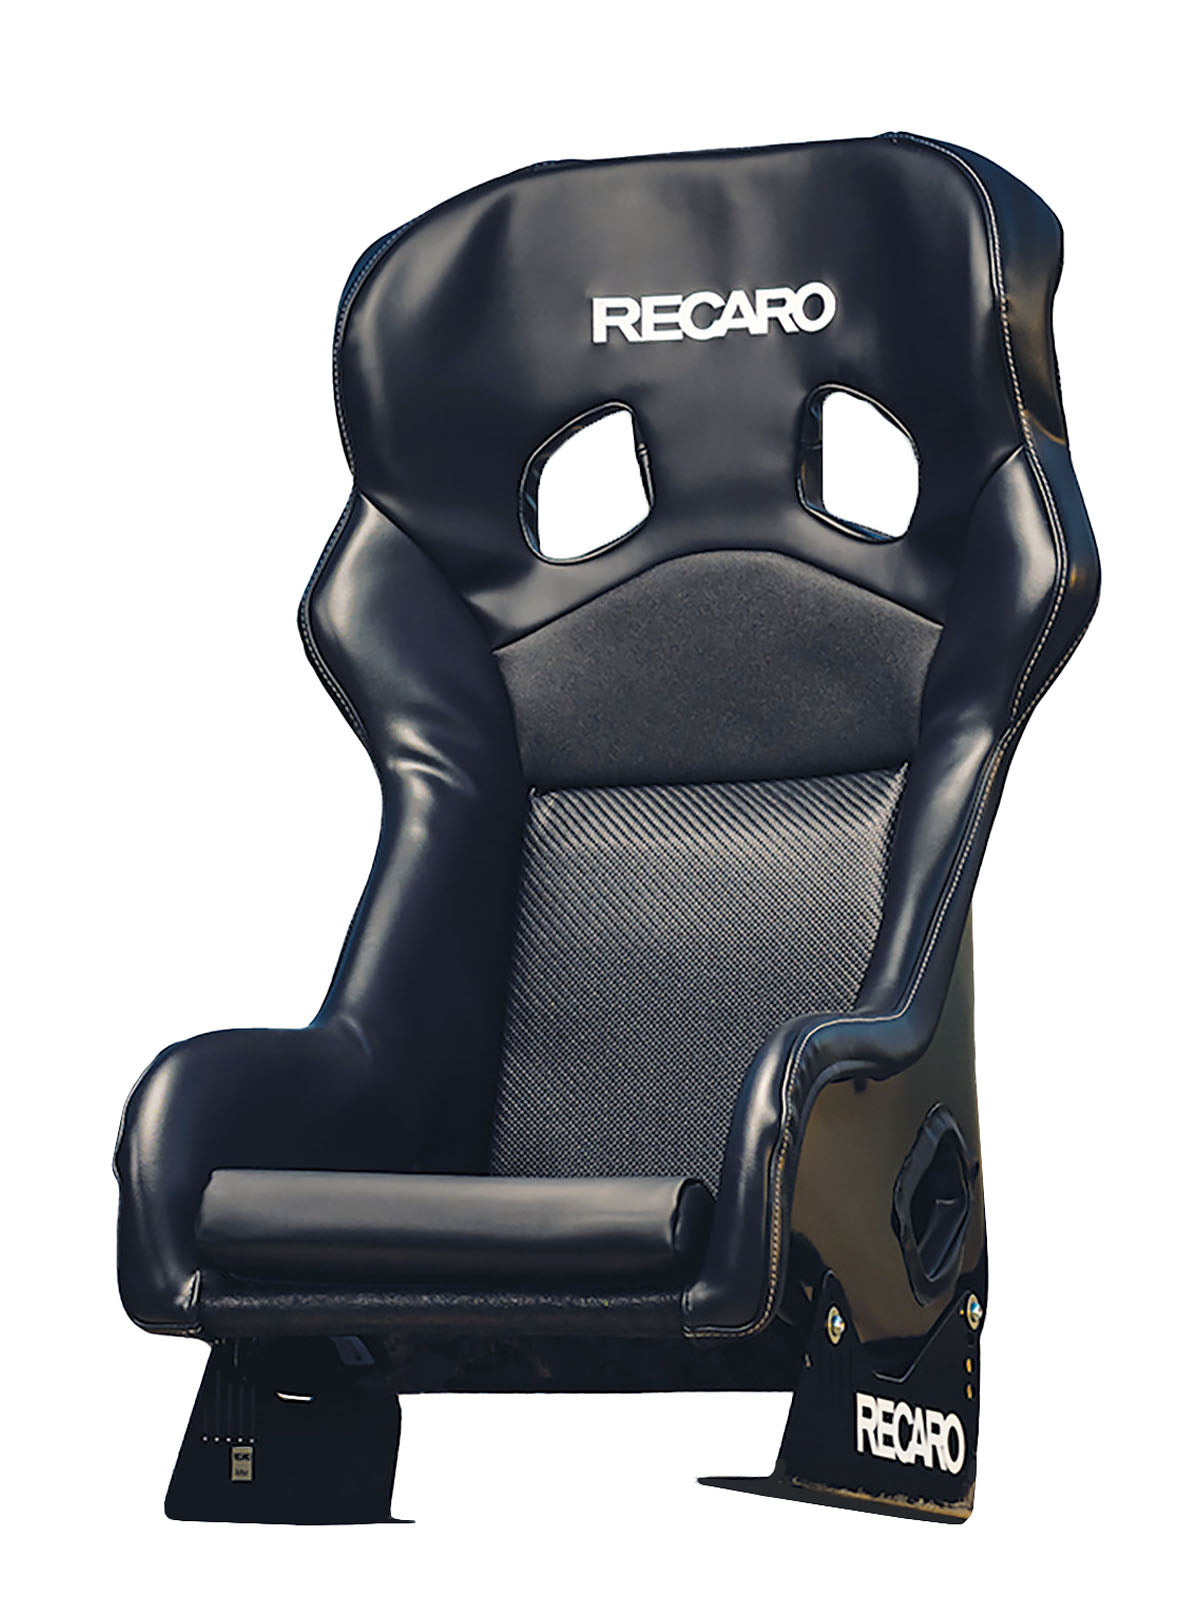 Recaro Pro Racer SPG XL ORV Racing Seat